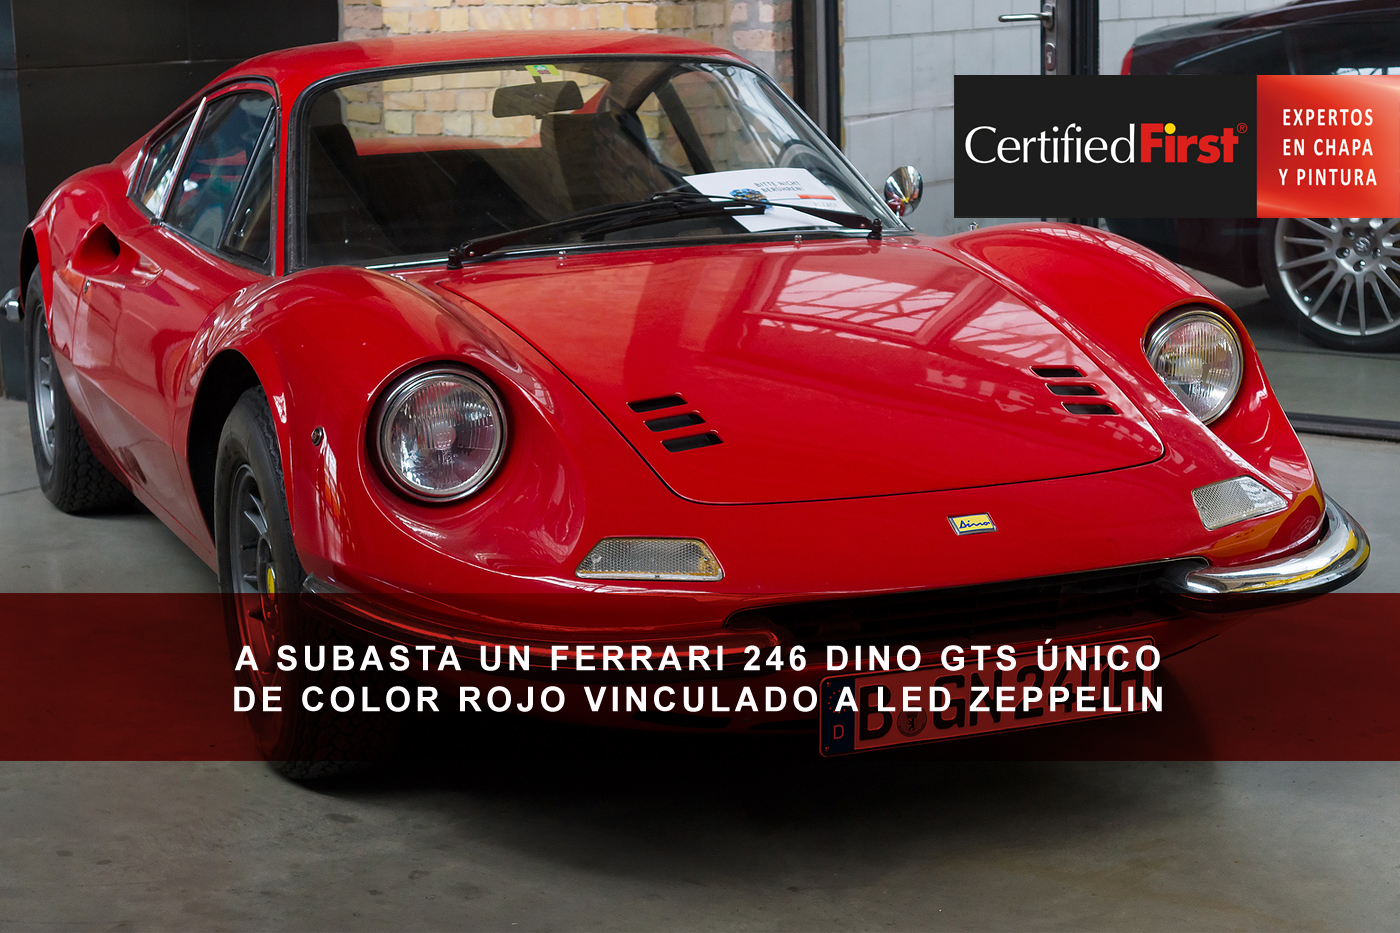 A subasta un Ferrari 246 Dino GTS único de color rojo vinculado a Led Zeppelin